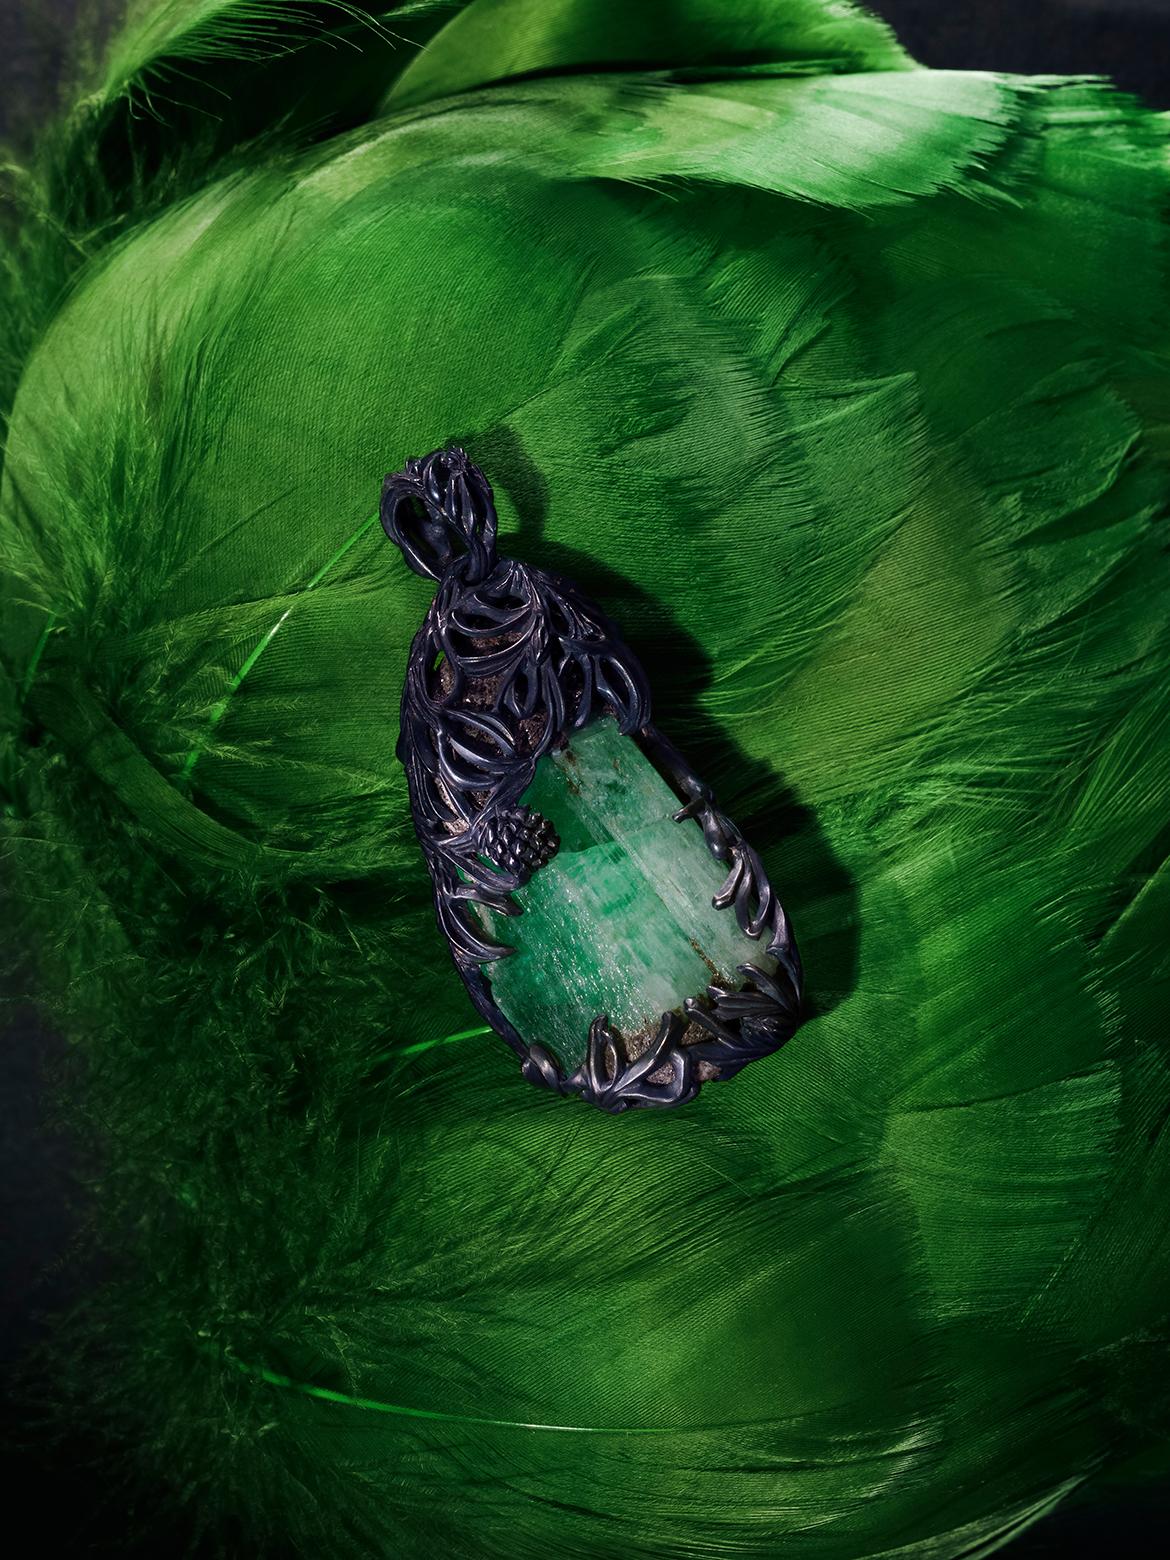 Collier Pine double face avec cristal d'Emeraude naturelle brute (béryl vert) en argent patiné.
Origine de l'émeraude - Montagnes de l'Oural
Dimensions du cristal émeraude - 16 х 25 х 38 mm / 0.63 x 0.98 x 1.5 in
Poids de l'émeraude - 74